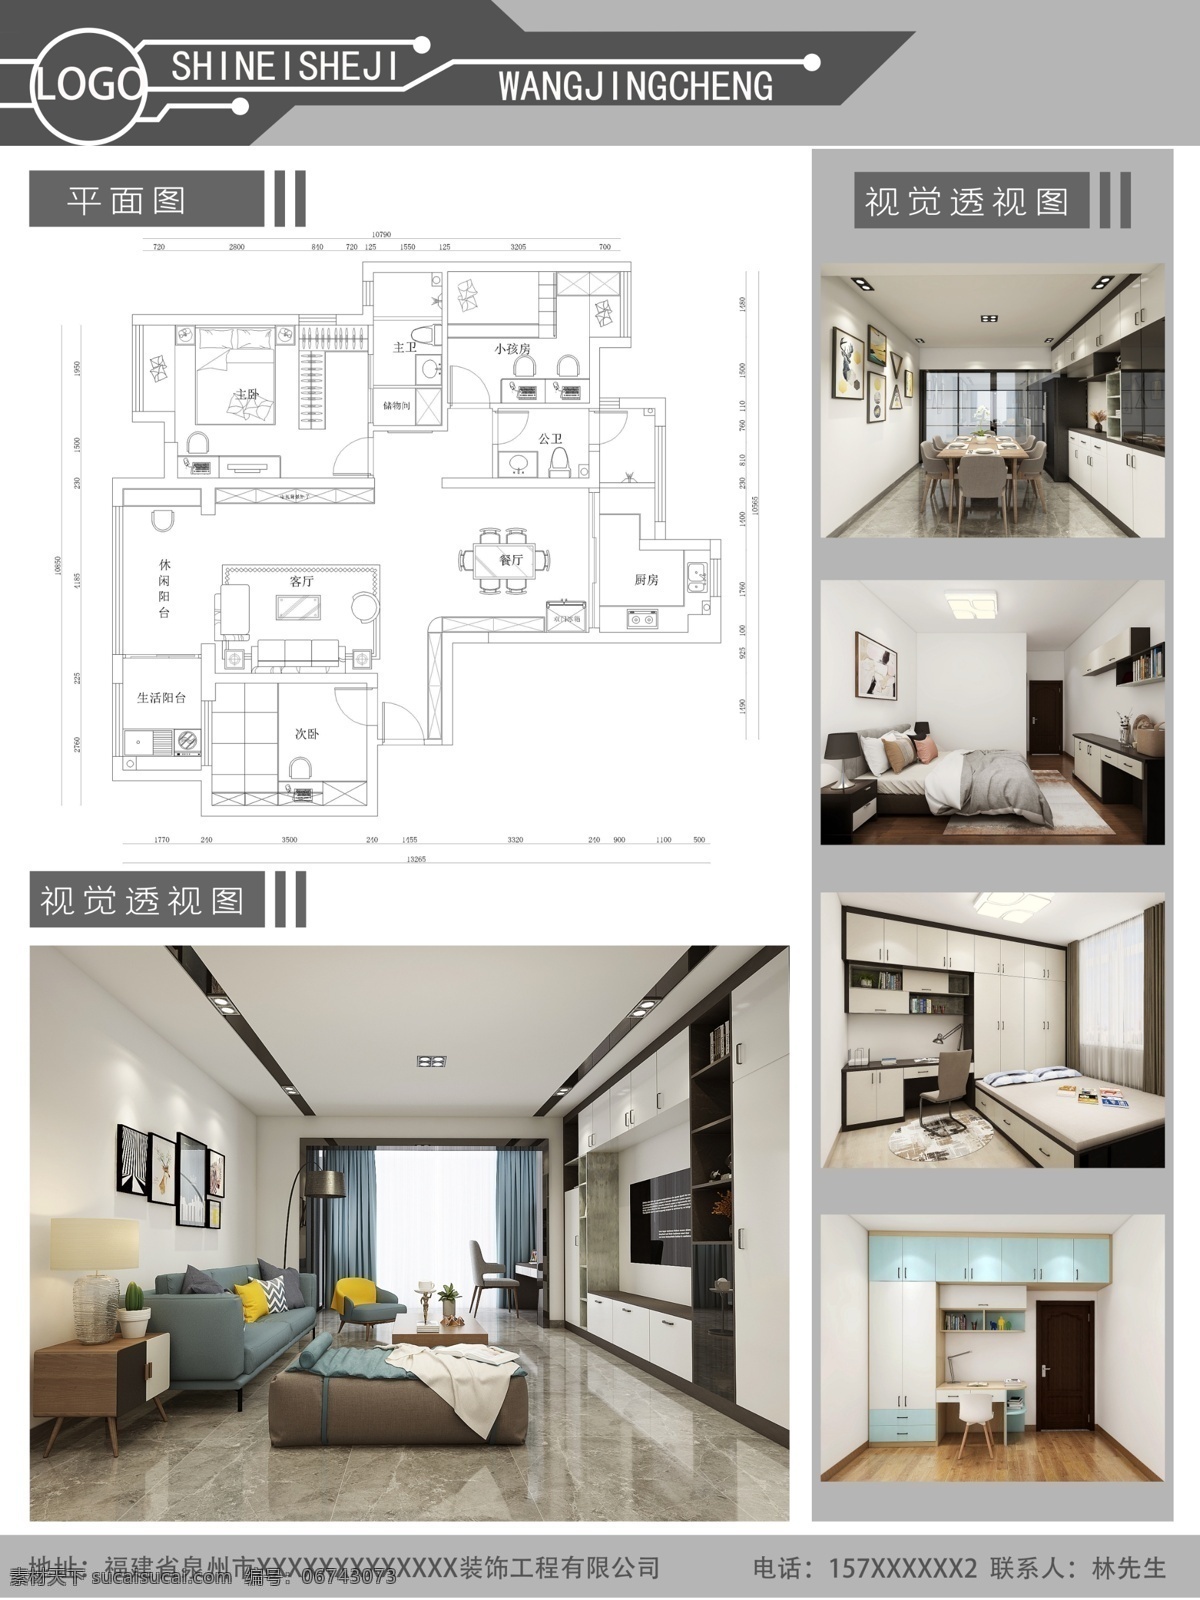 室内设计展板 室内设计 展板 现代风格设计 黑白灰效果 套房设计 3d设计 展示模型